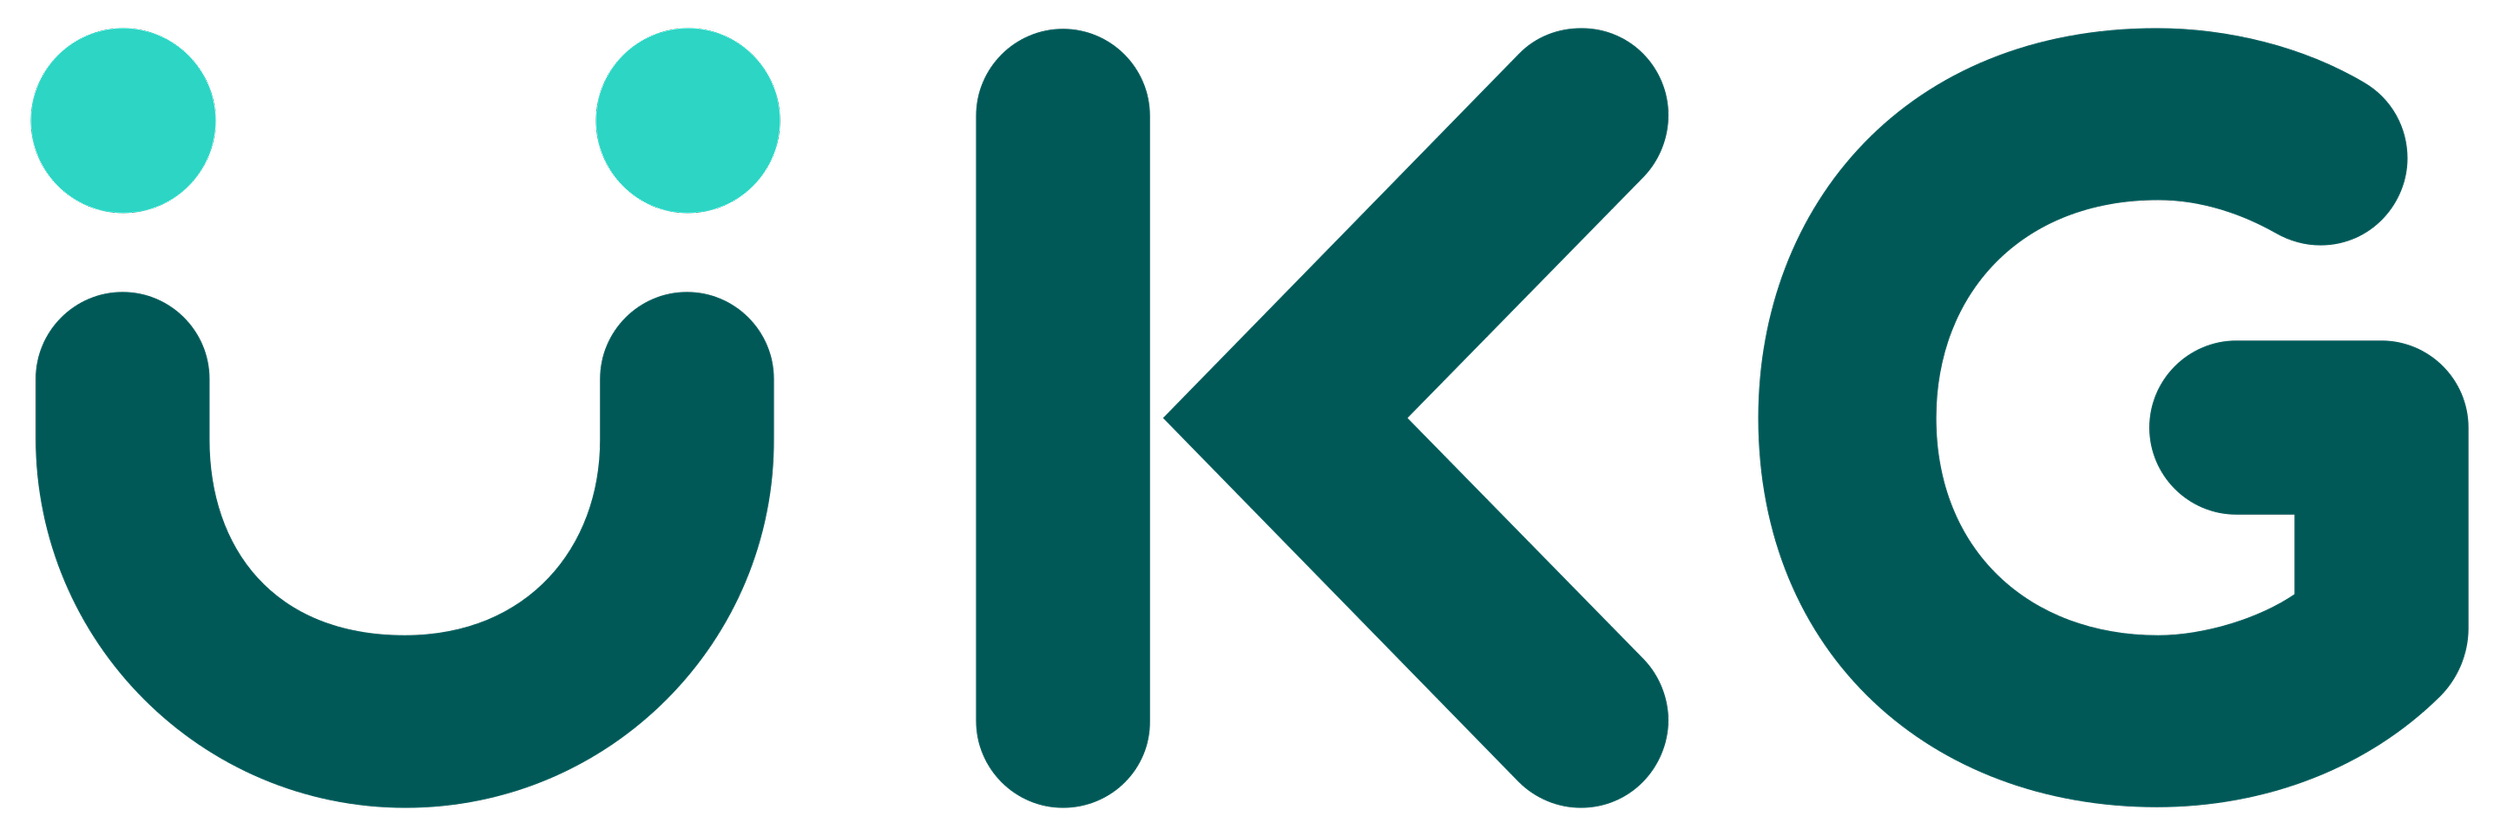 UKG_(Ultimate_Kronos_Group)_logo.png